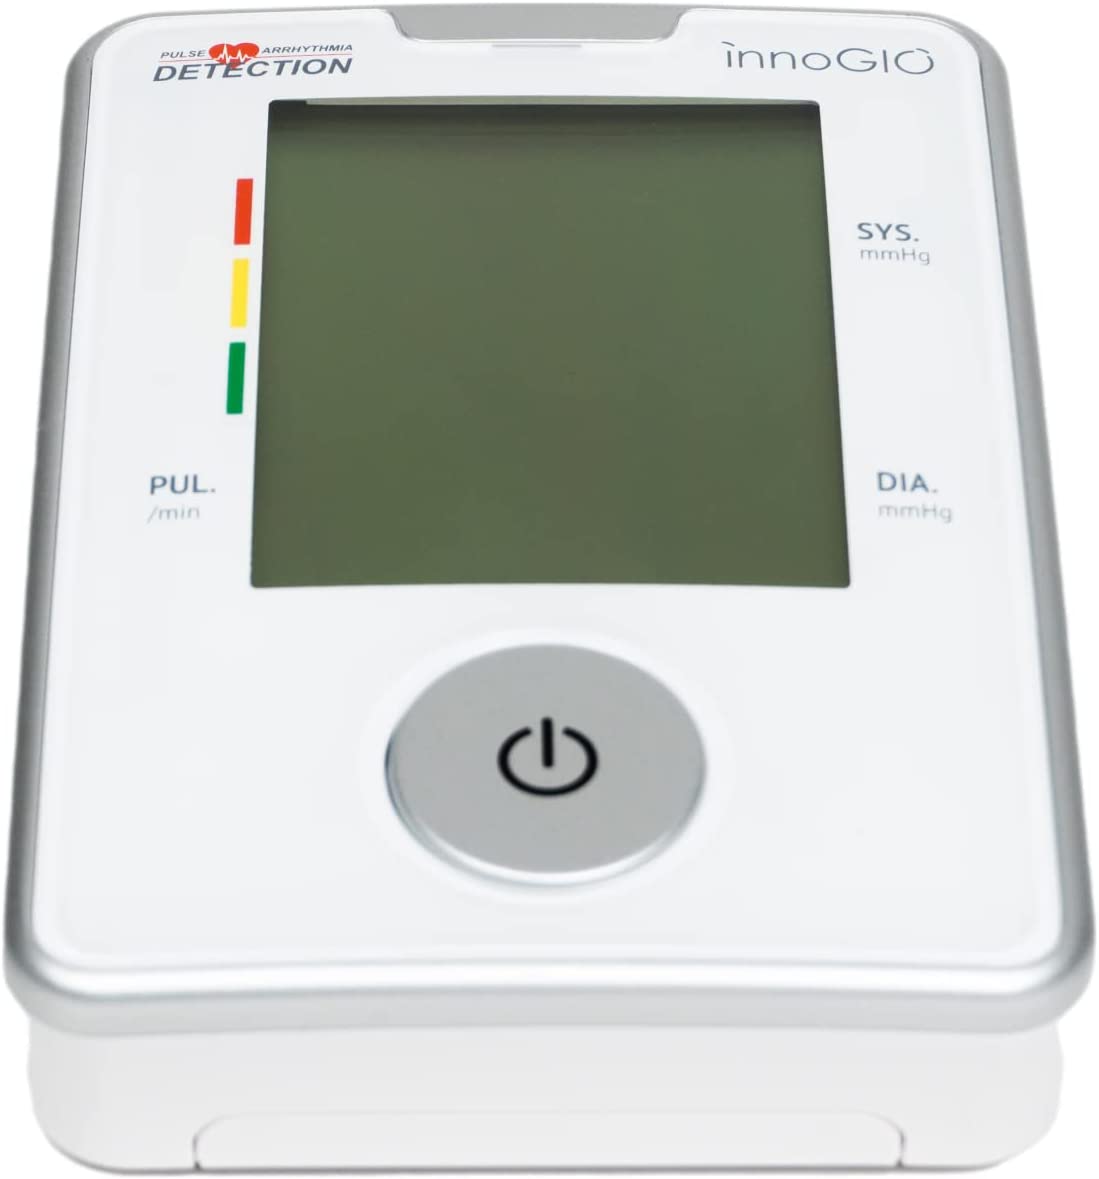 InnoGIO GIOpulse, Oberarm-Blutdruckmessgerät, mit Herzfrequenz- und Arrhythmie-Erkennung, automatischem Blutdruckmessgerät, schnell und genau 